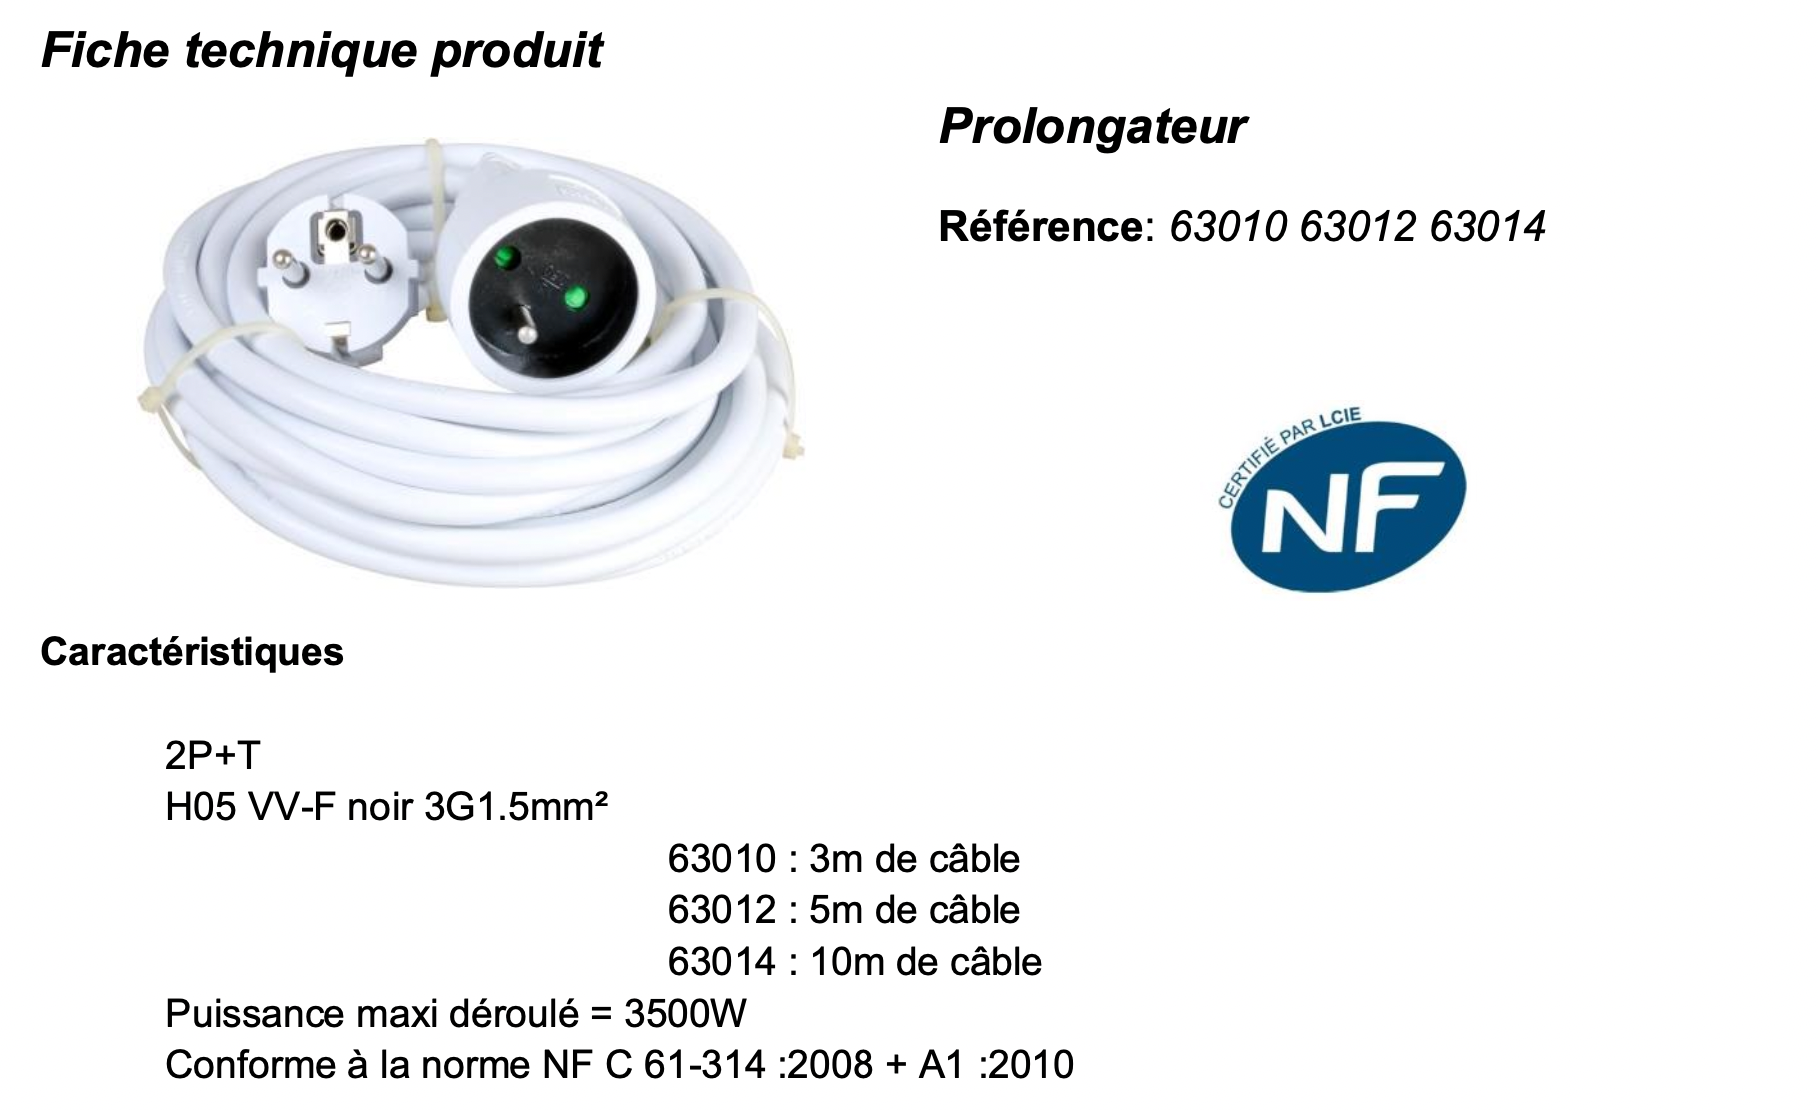 Fiche électrique certifié NF pour rallonge et prolongateur